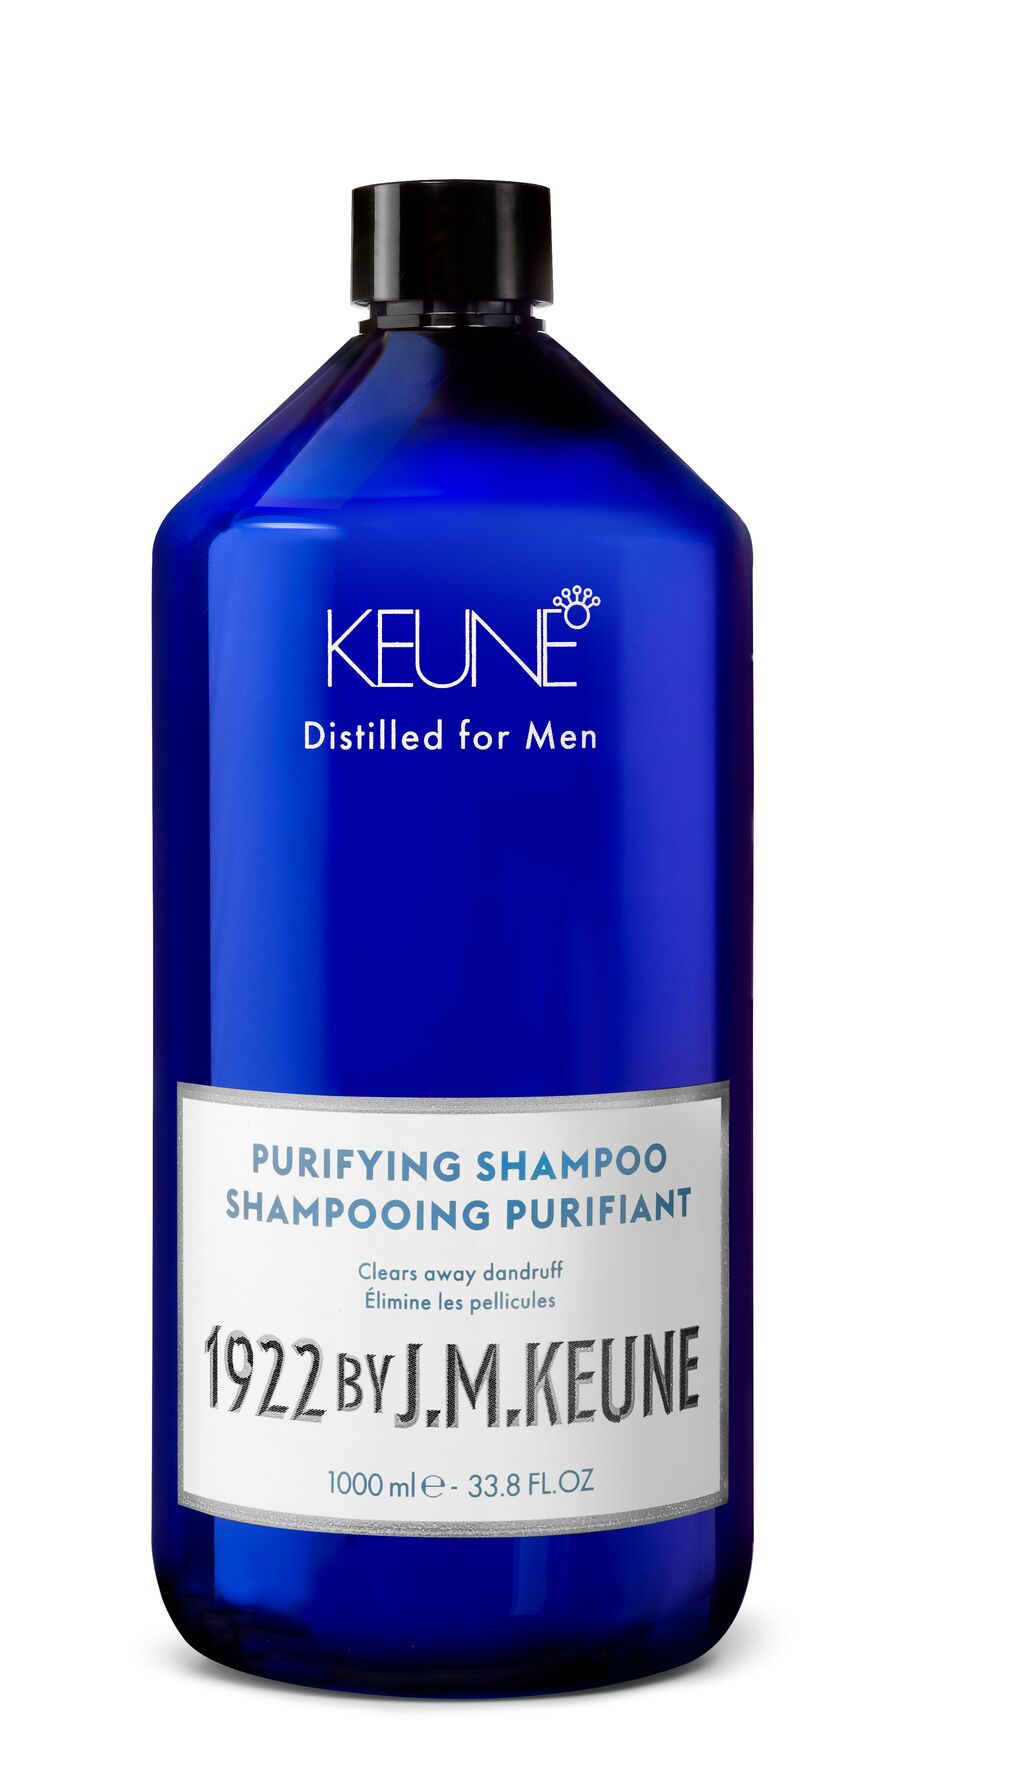 Notre shampooing pour hommes efficace contre les cheveux et les pellicules grâce au pyrithione de zinc et renforcé avec de la créatine. Découvrez-en plus sur Shampooing Purifiant 1922 sur keune.ch.